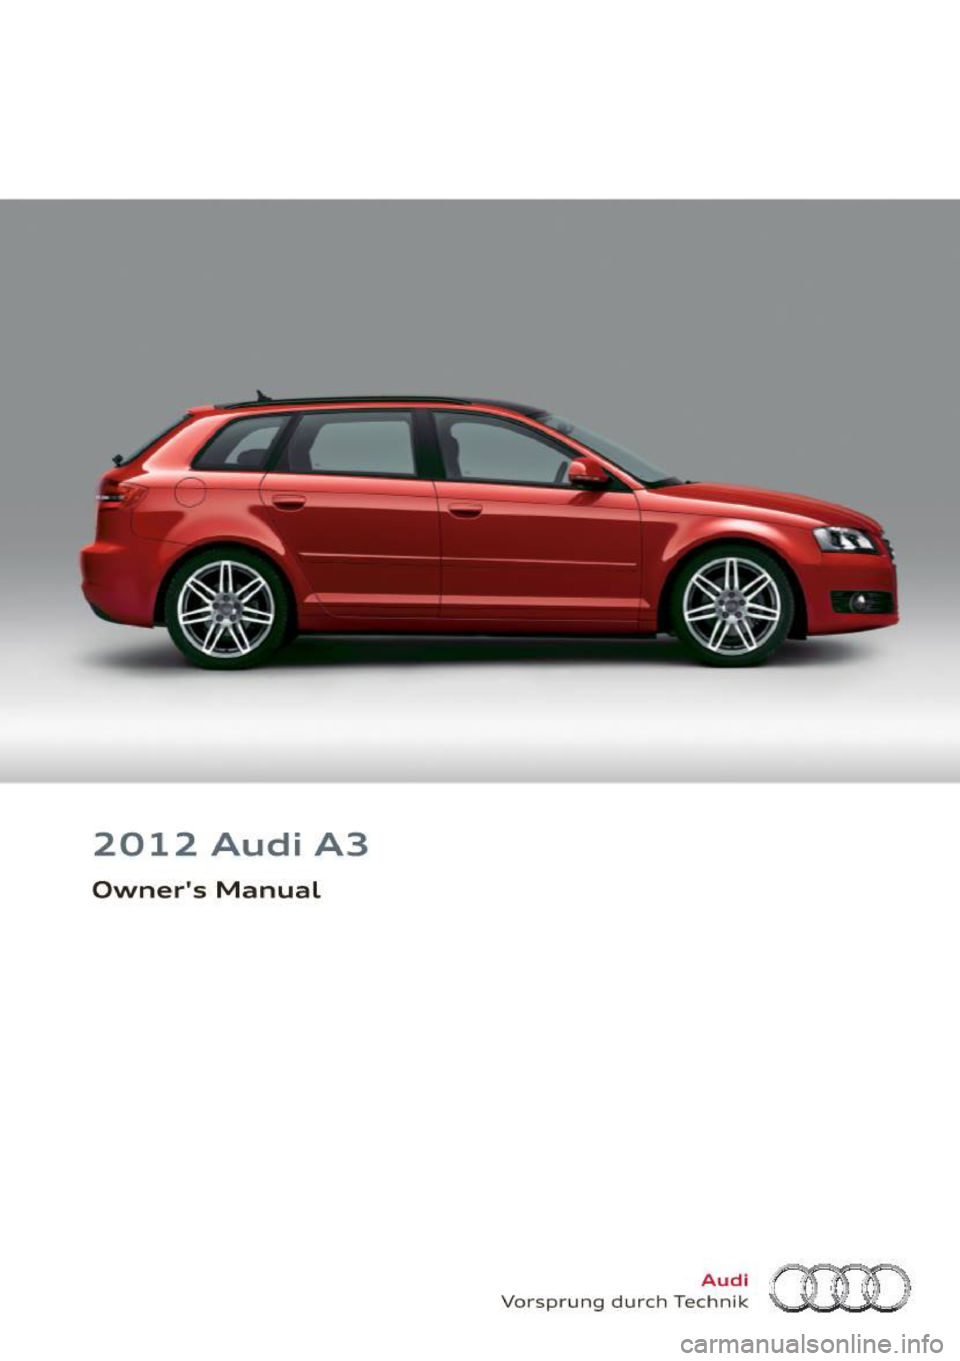 AUDI A3 2012  Owner´s Manual 2012  Audi  A3 
Owners  Manual 
Audi 
Vorsprung  durch  Technik  